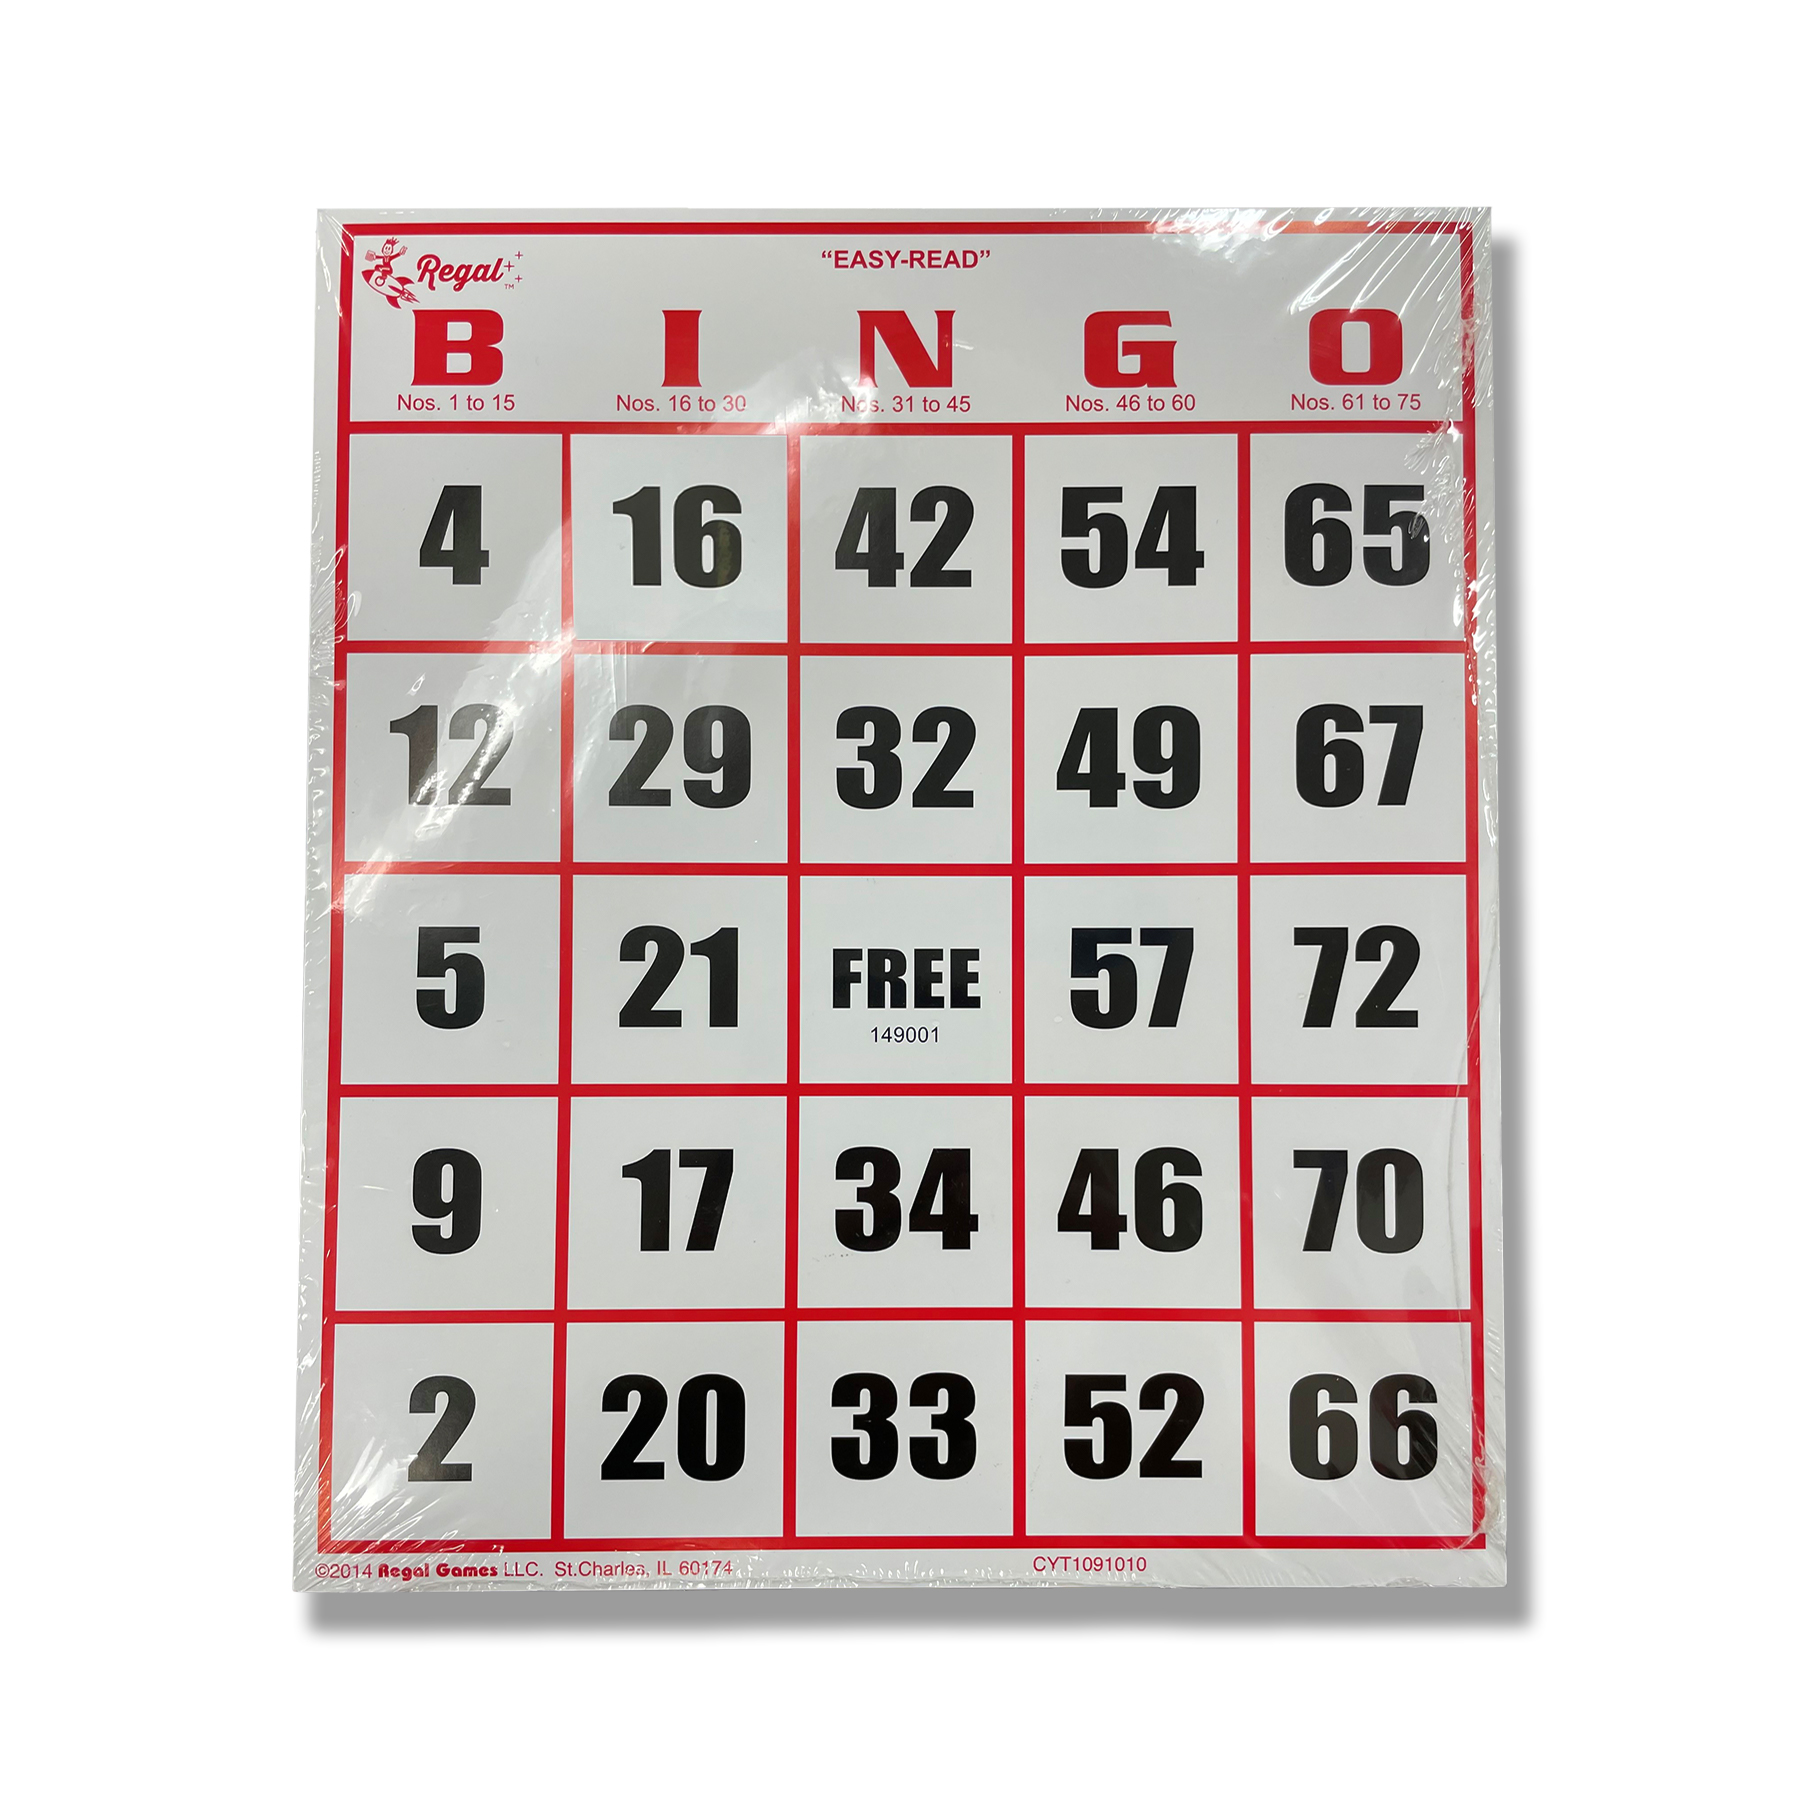 Easy-Read Bingo Cards